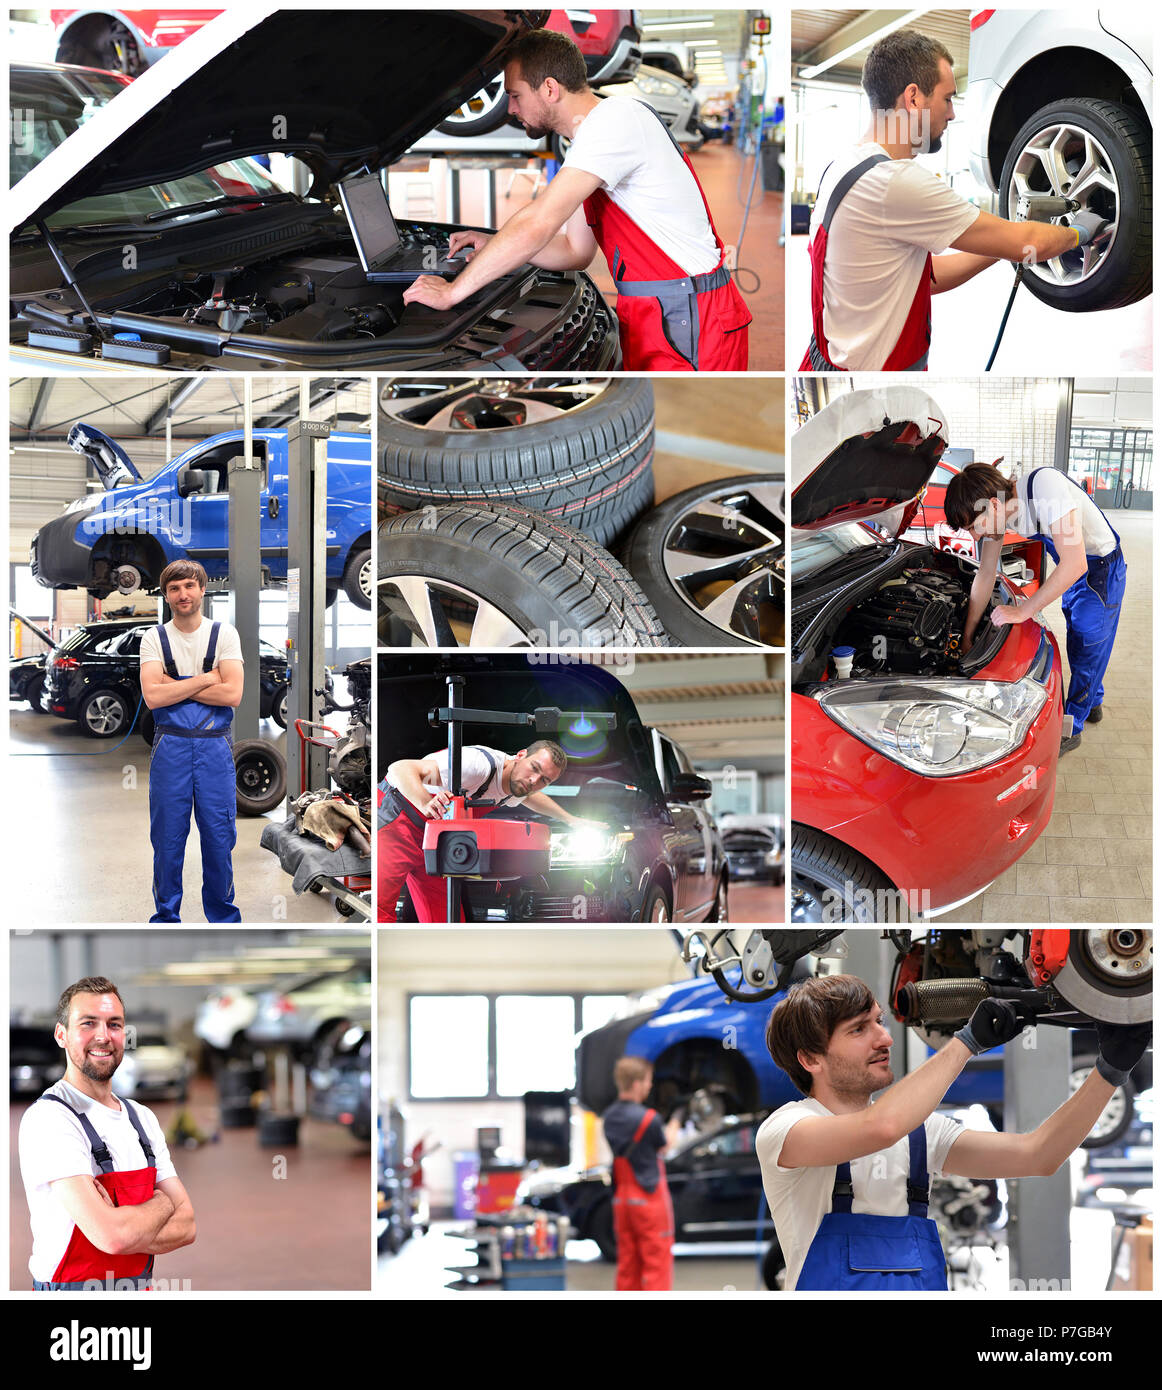 Collage mit Motiven in einer Autowerkstatt - Autoreparatur, ändern Reifen, Motor Diagnose Stockfoto